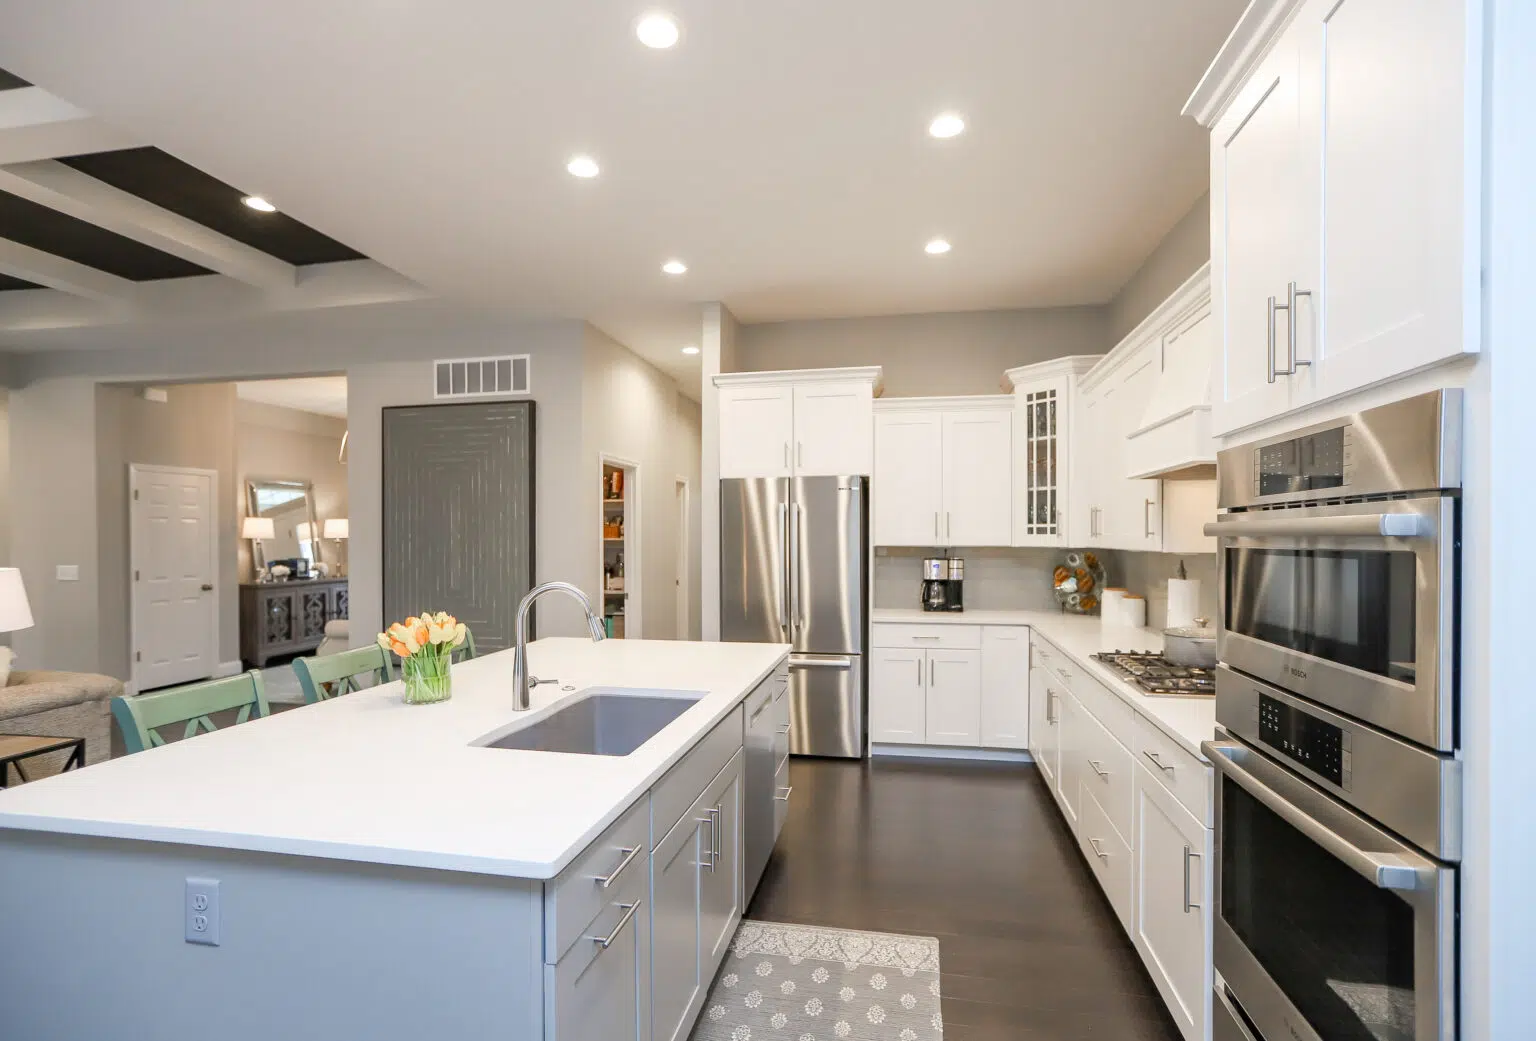 Bright kitchen featuring modern upgrades.